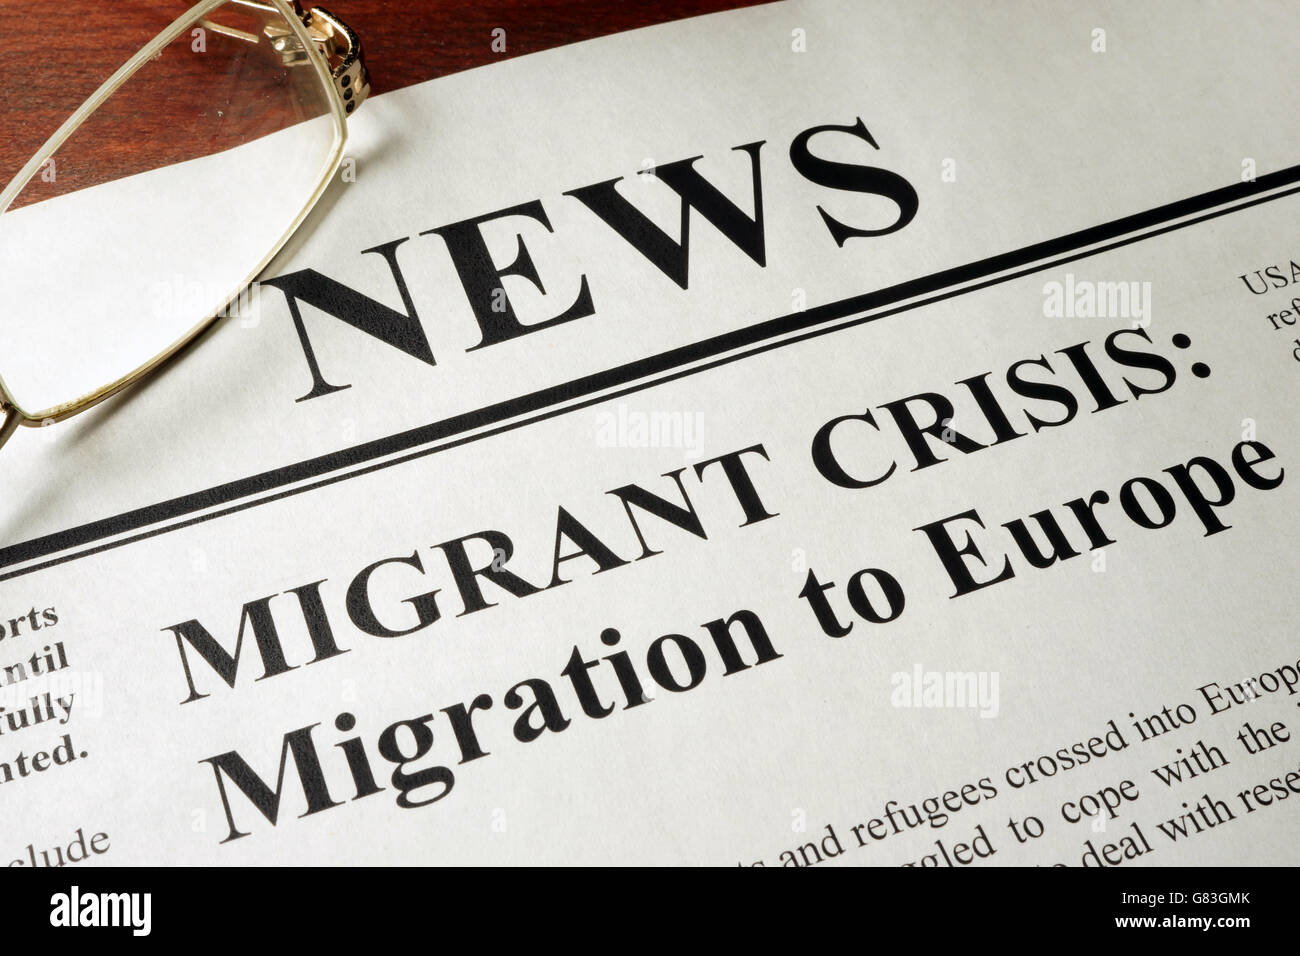 Zeitung mit Header Nachrichten und Migranten Krise: Migration nach Europa. Stockfoto